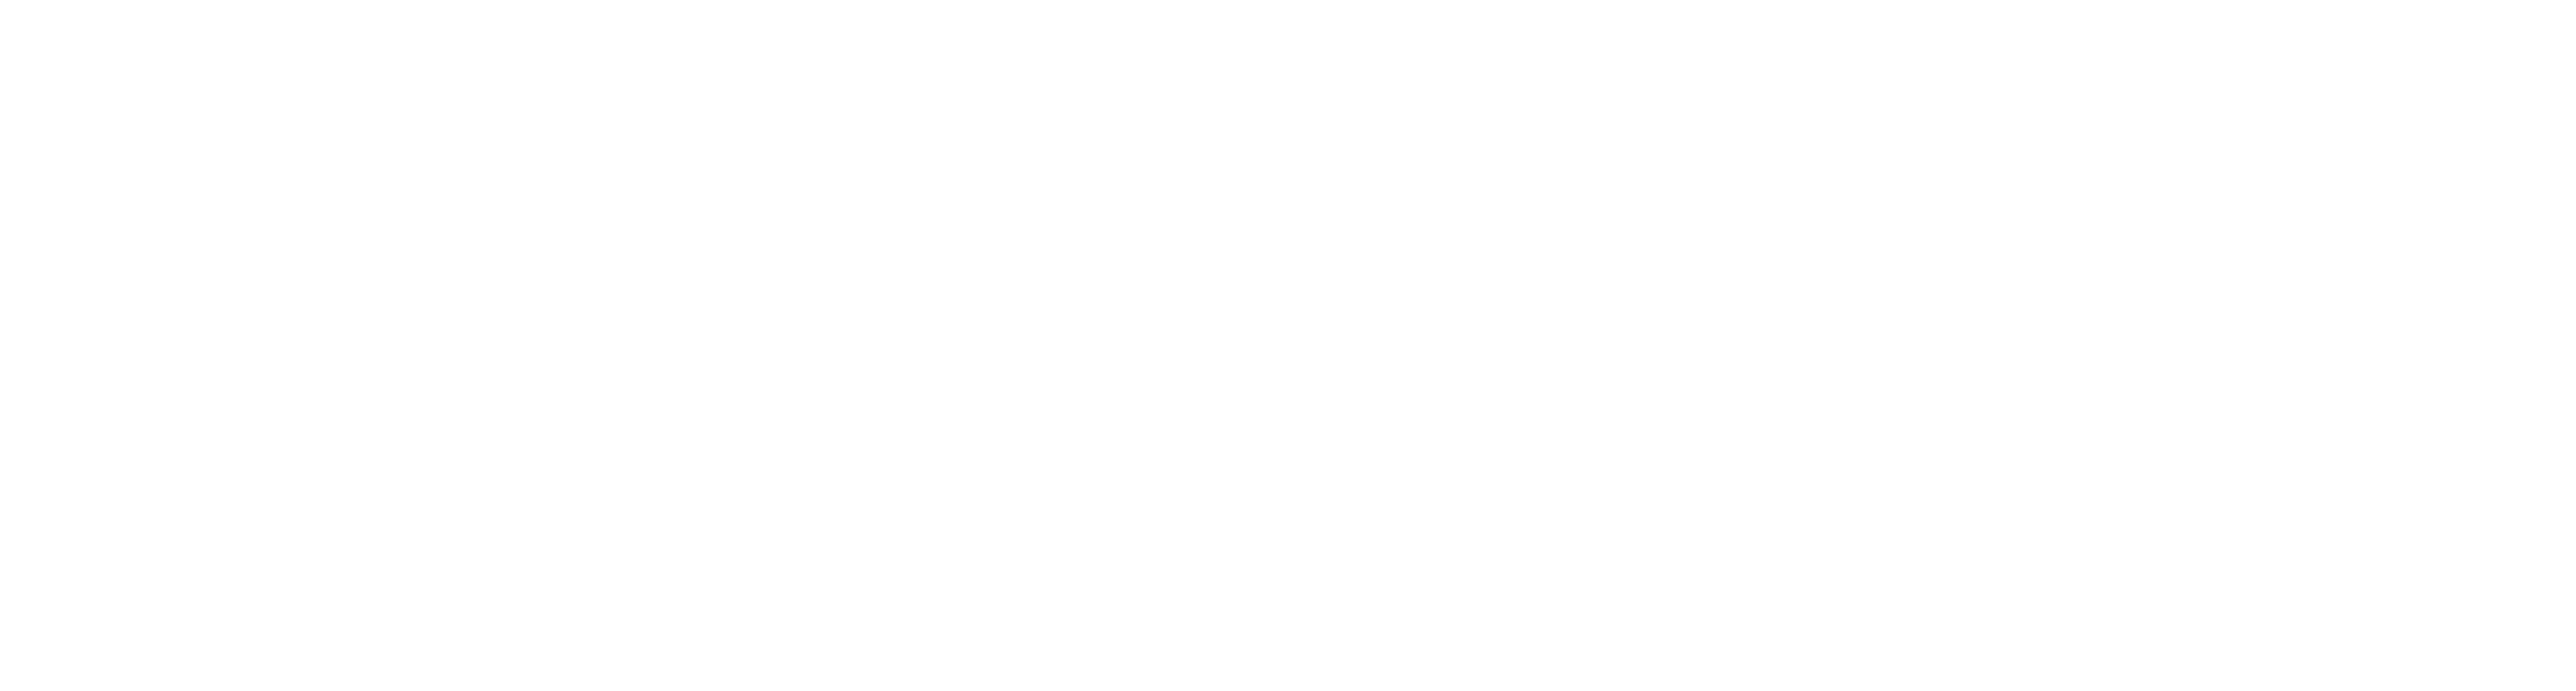 Secret Intelligence Service MI6